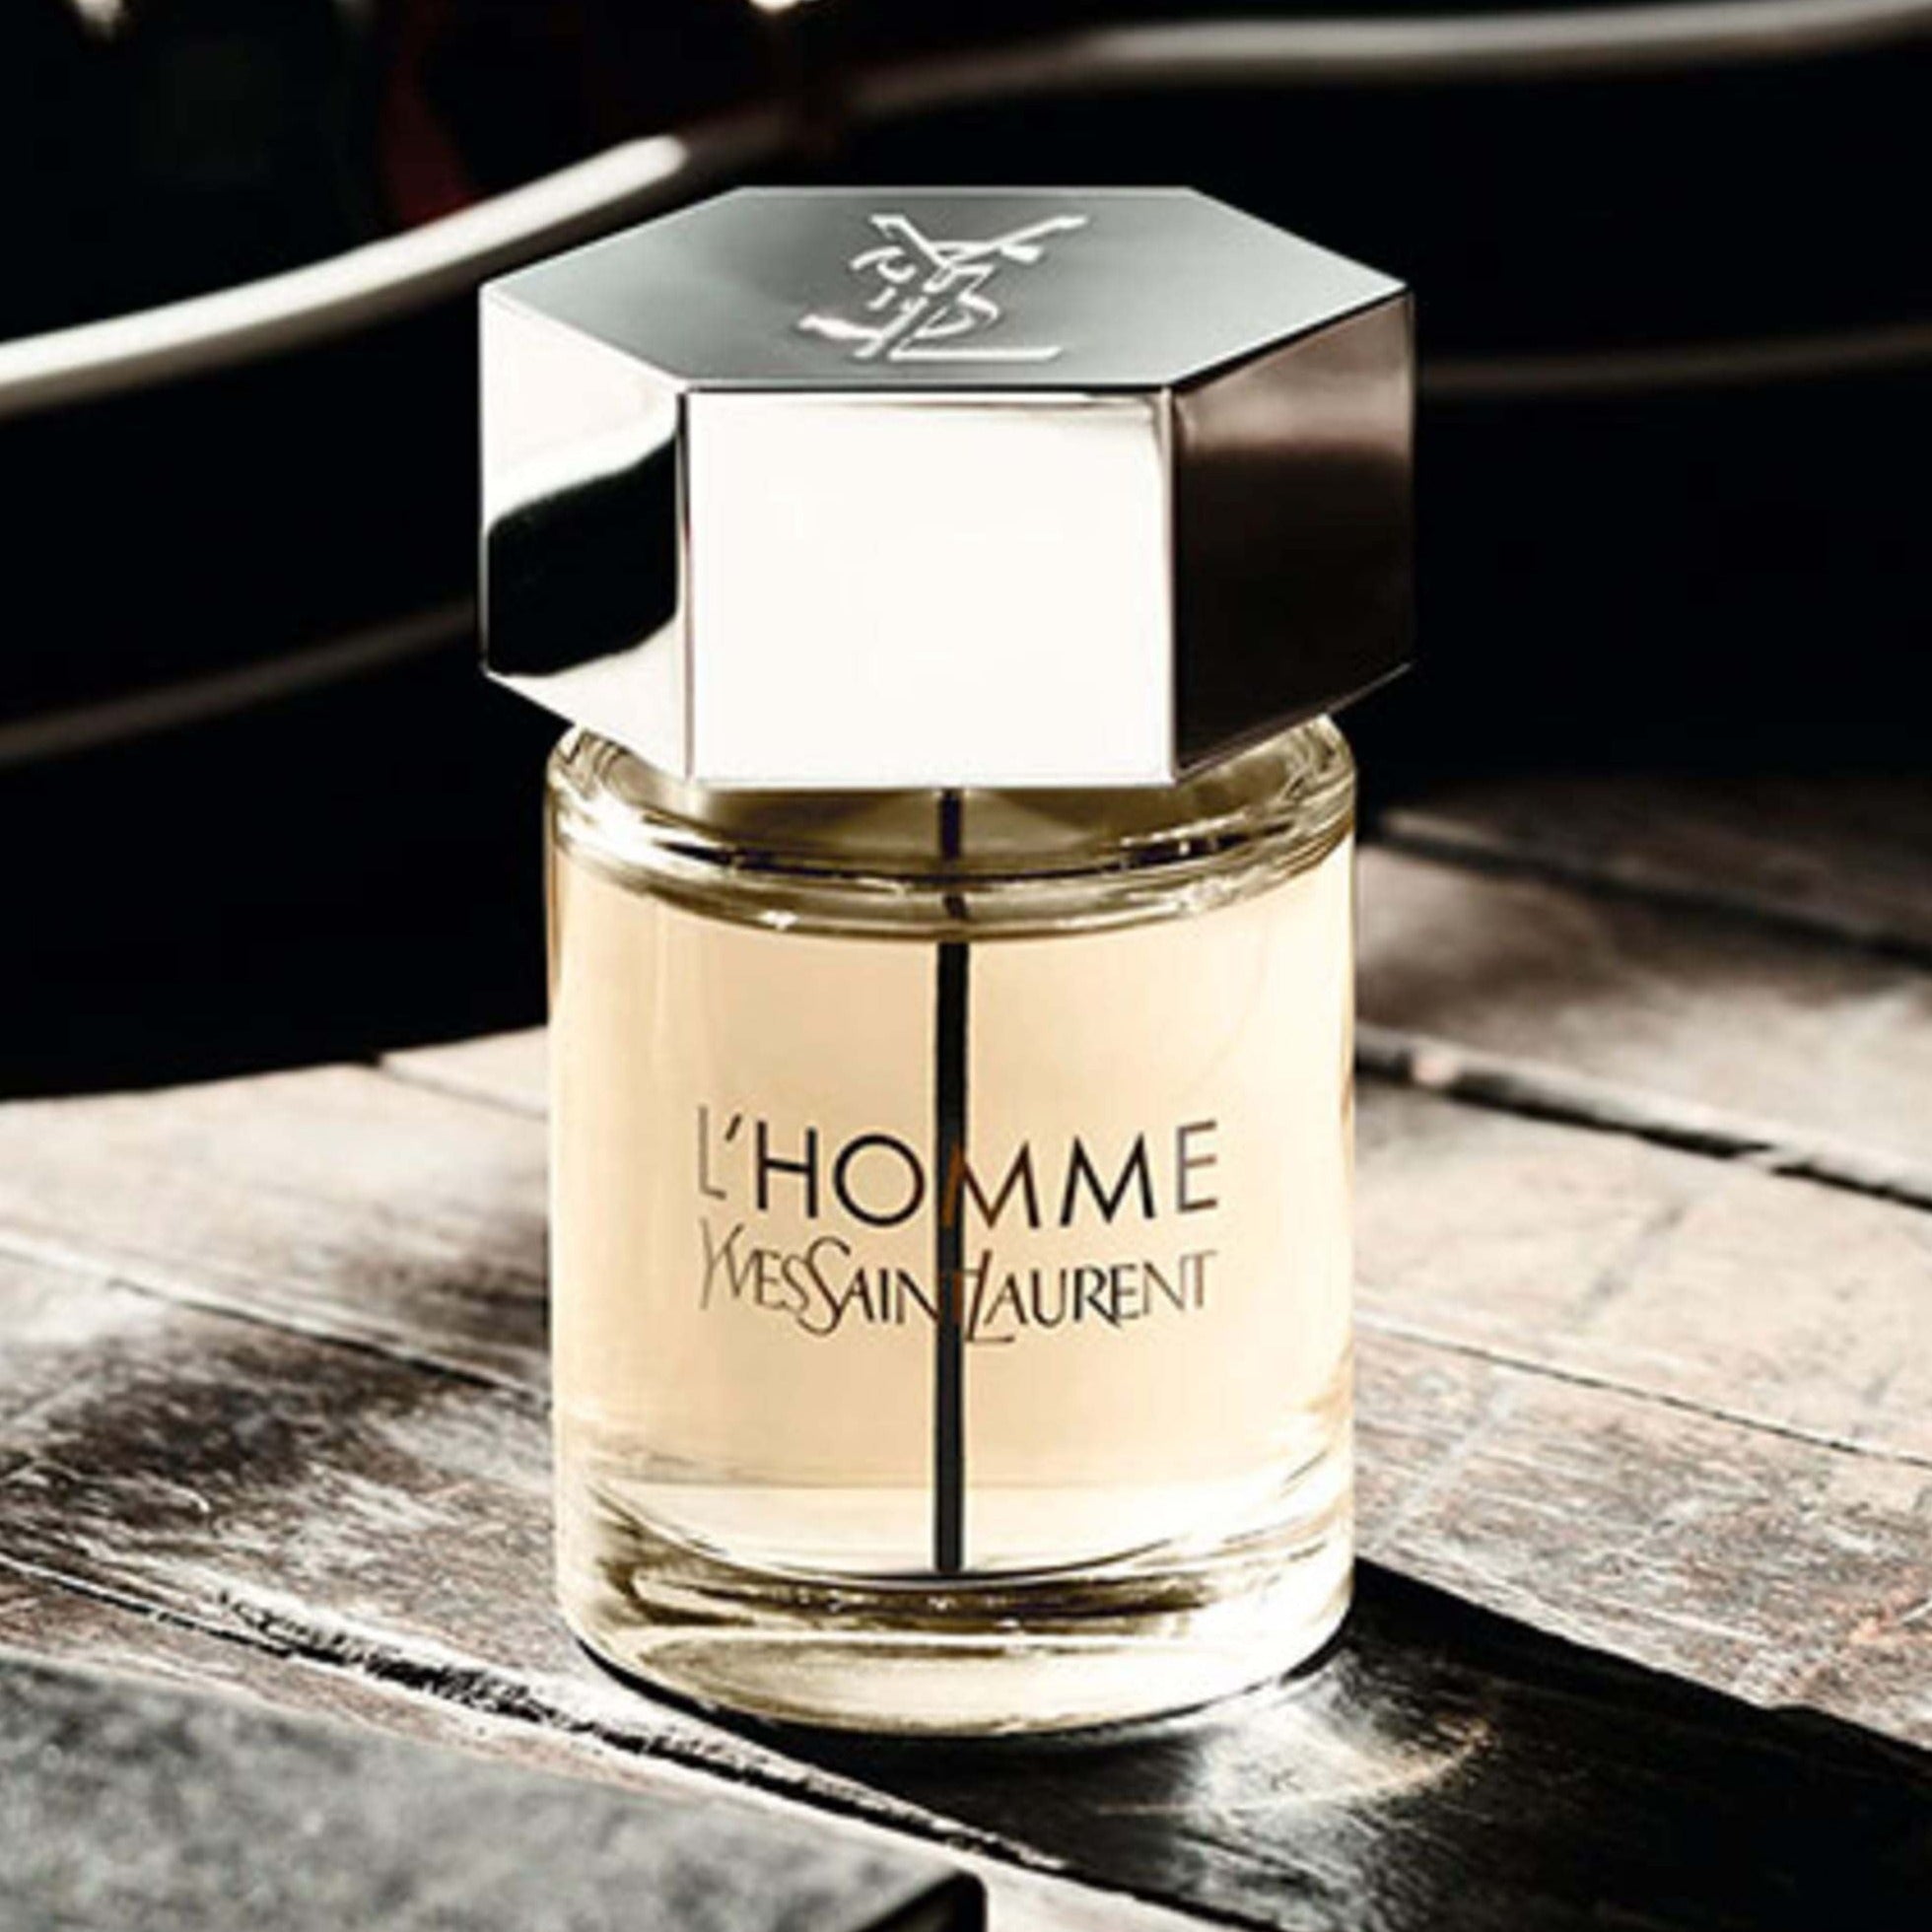 Yves Saint Laurent L'Homme EDT | My Perfume Shop Australia